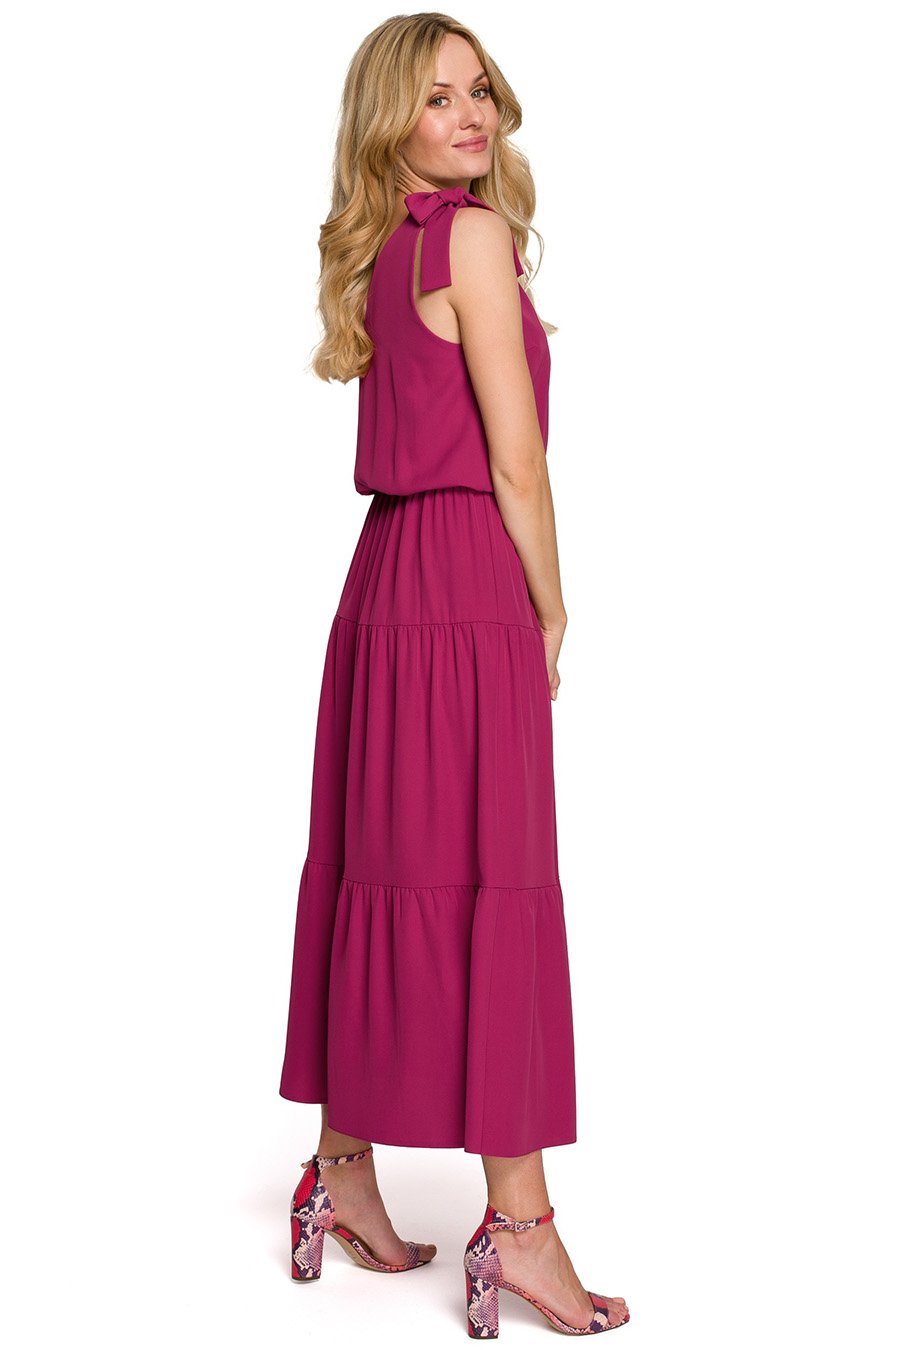 Γυναικείο φόρεμα Annika, Ροζ 2